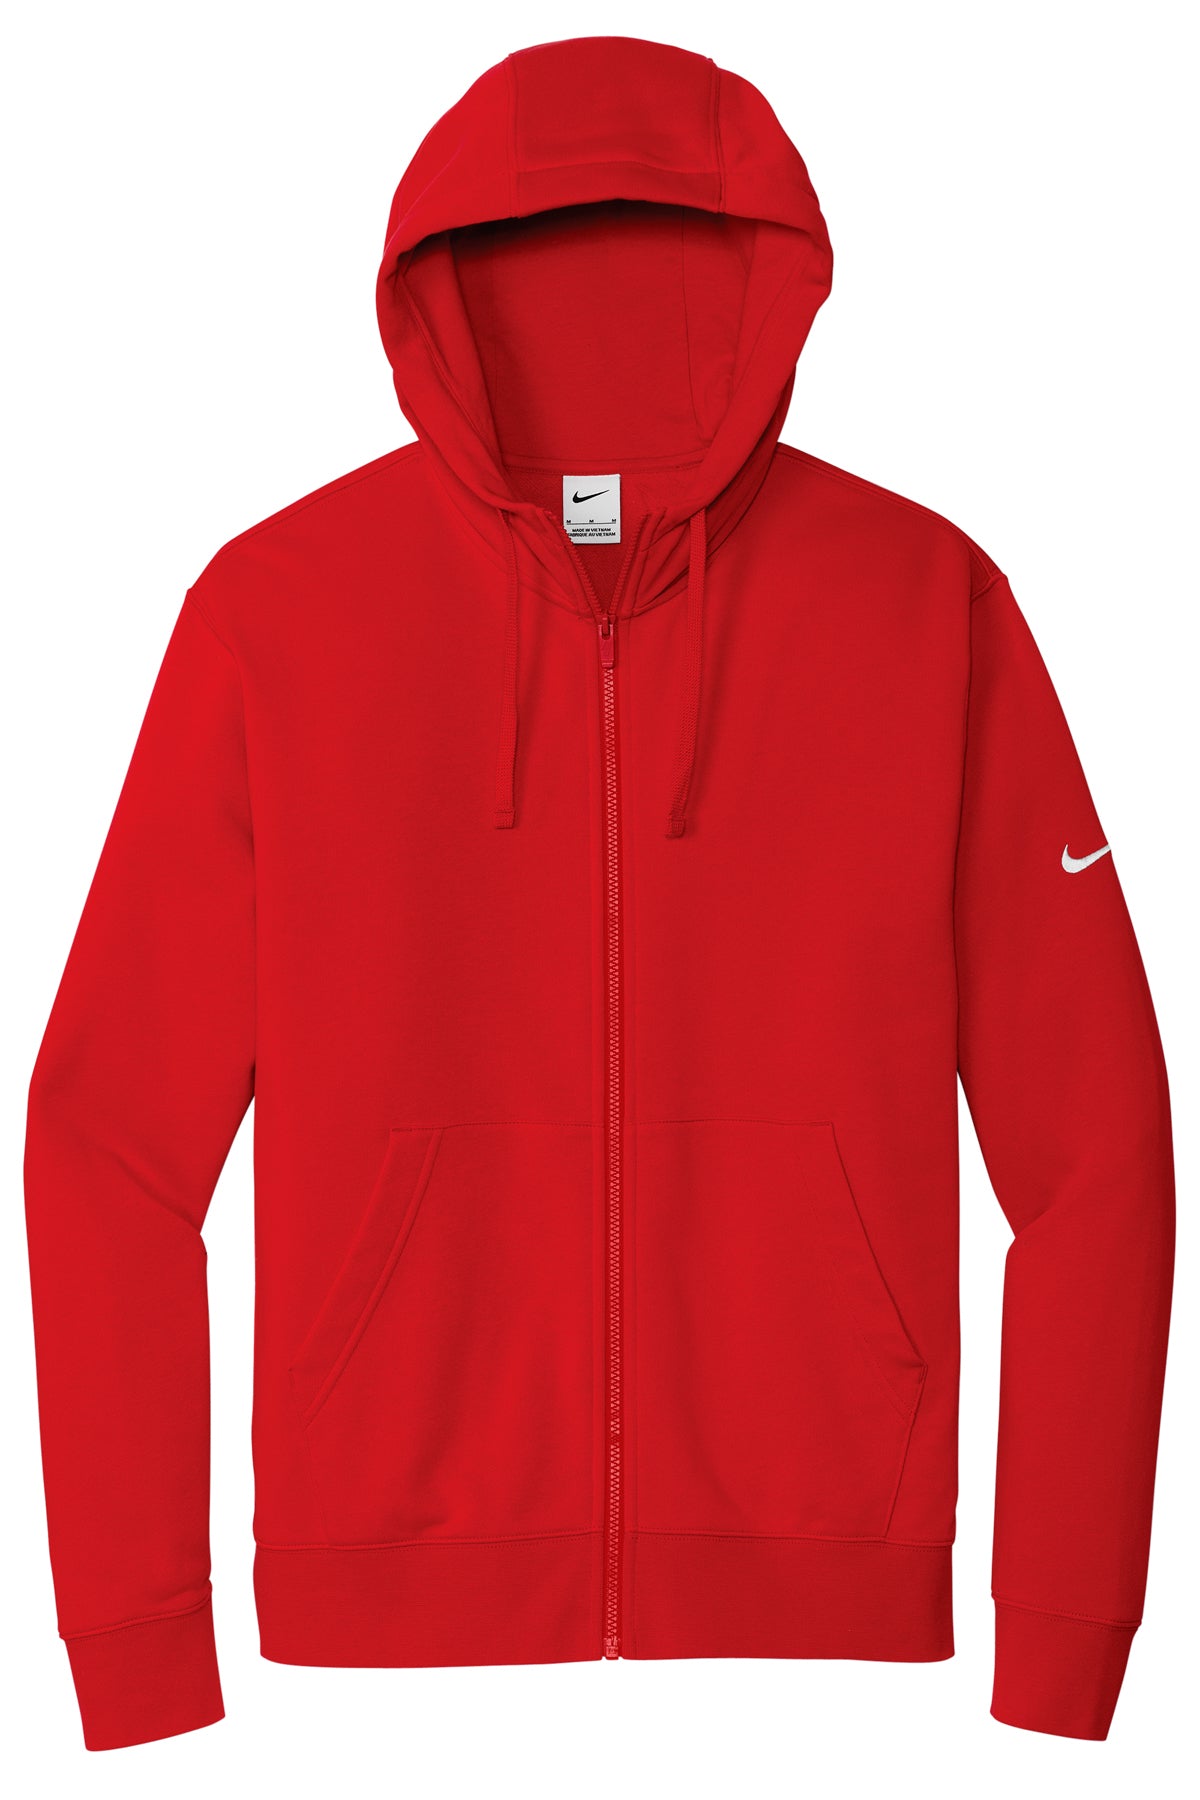 NKDR1513 Nike Club Fleece Sleeve Swoosh Full-Zip Hoodie